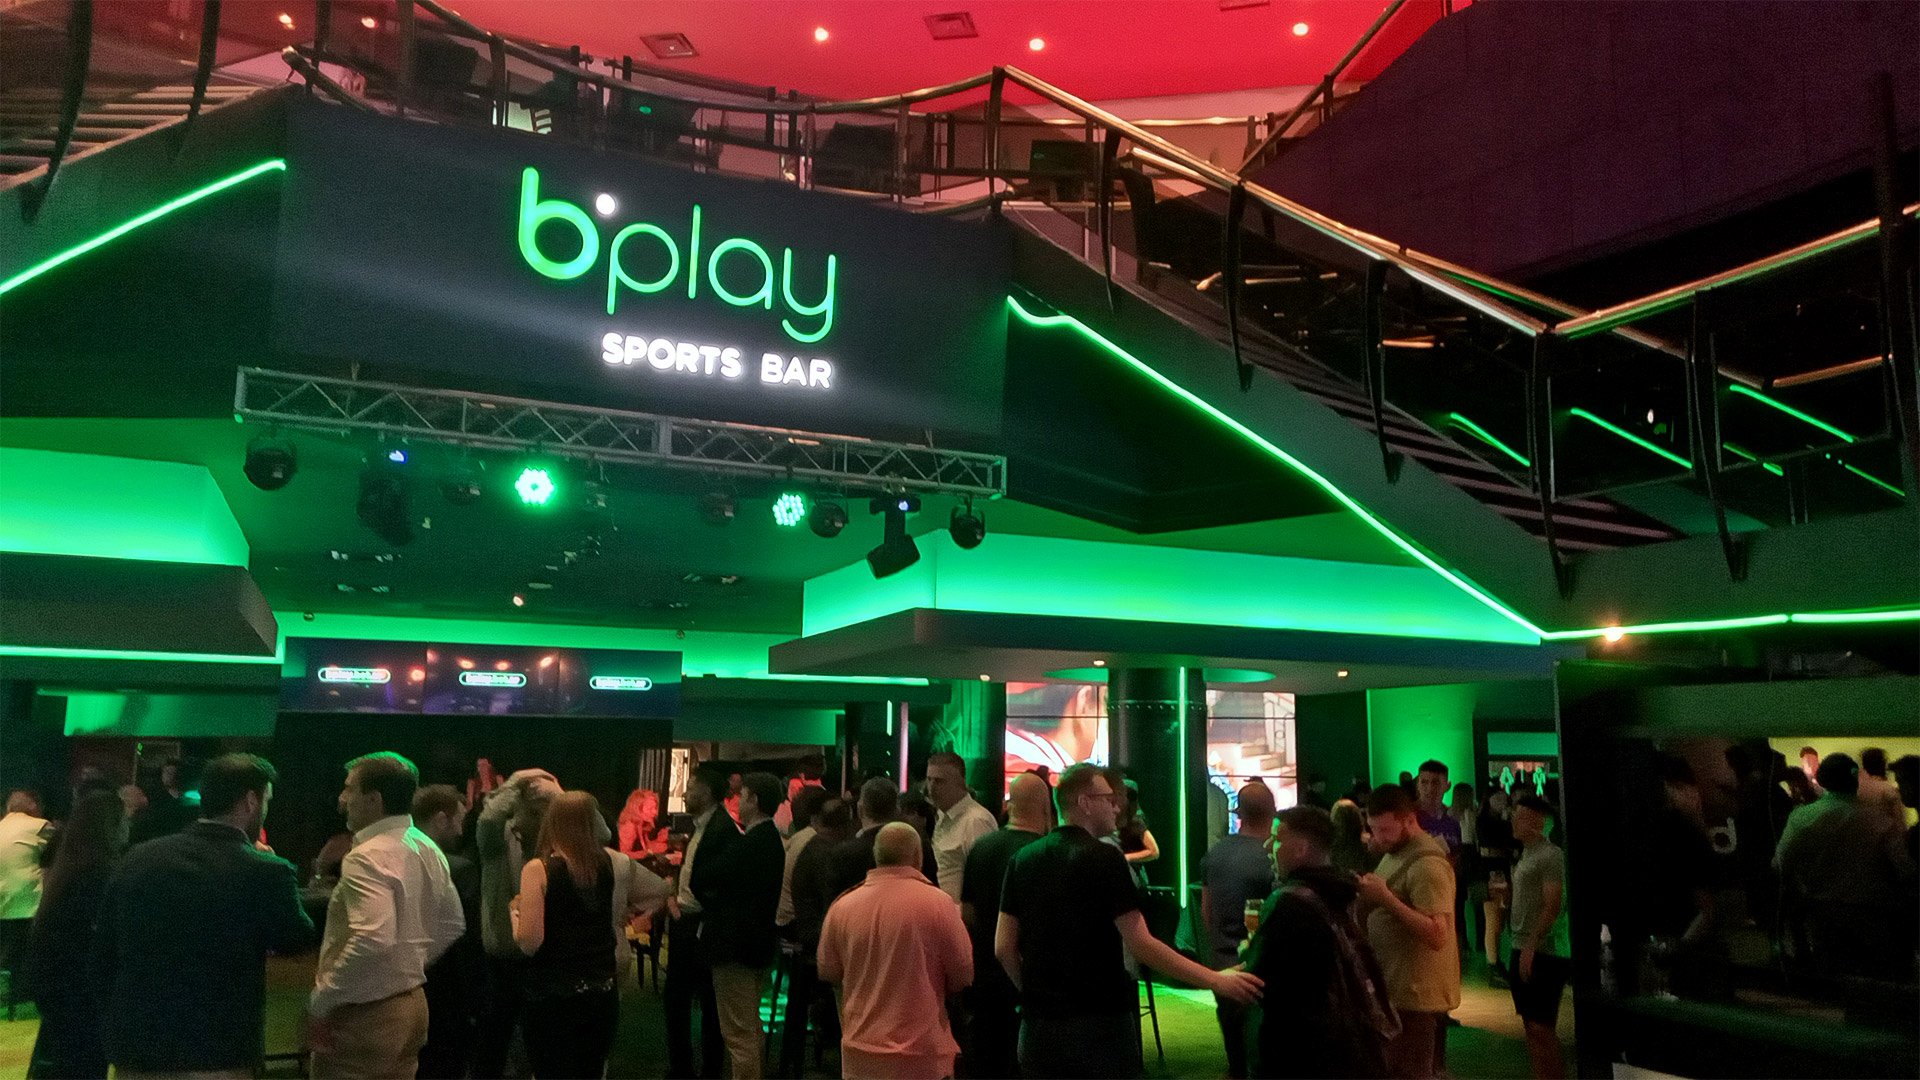 Trilenium abrió oficialmente las puertas del primer “bplay Sports Bar” en la provincia de Buenos Aires